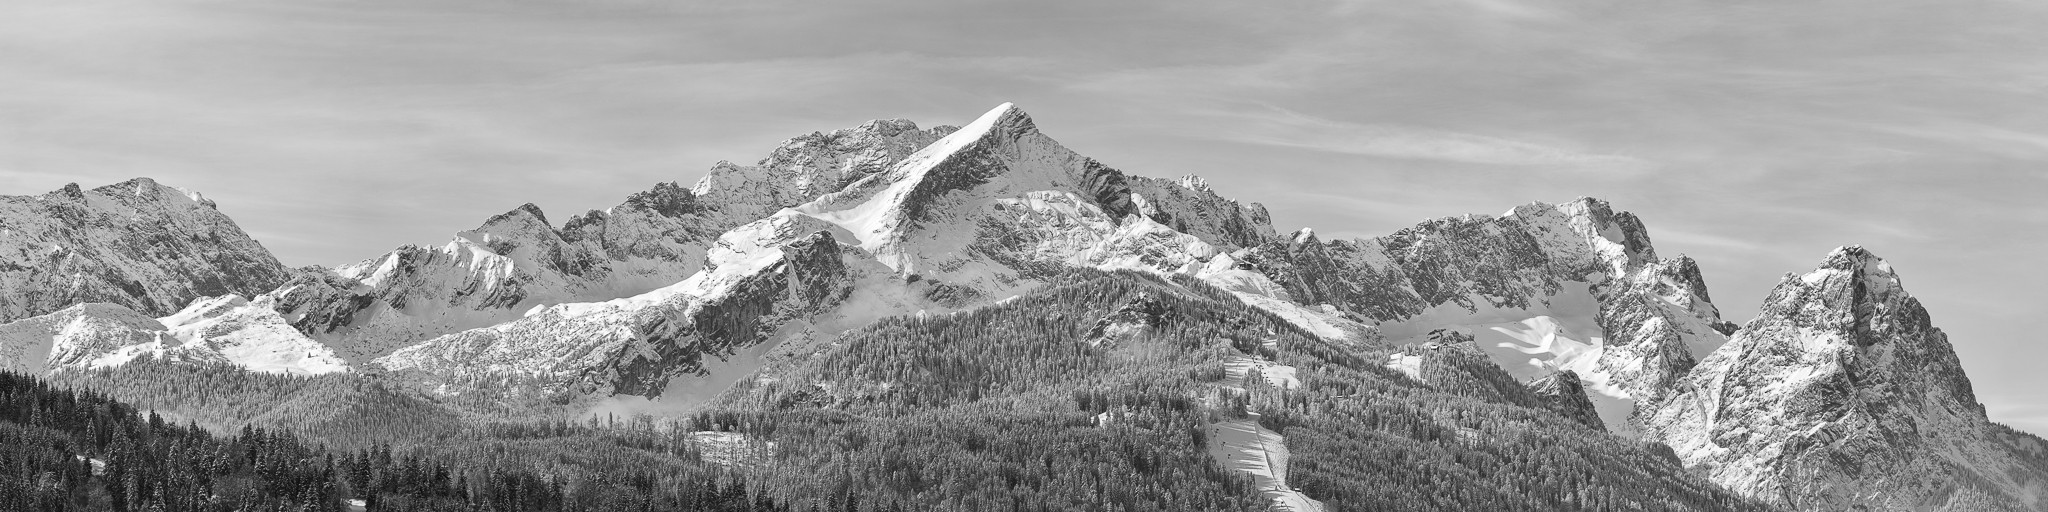 Alpspitze Zugspitze im Winter SW. Hochauflösendes Bergpanorama vom Wettersteingebirge mit Alpspitze und Zugspitze.